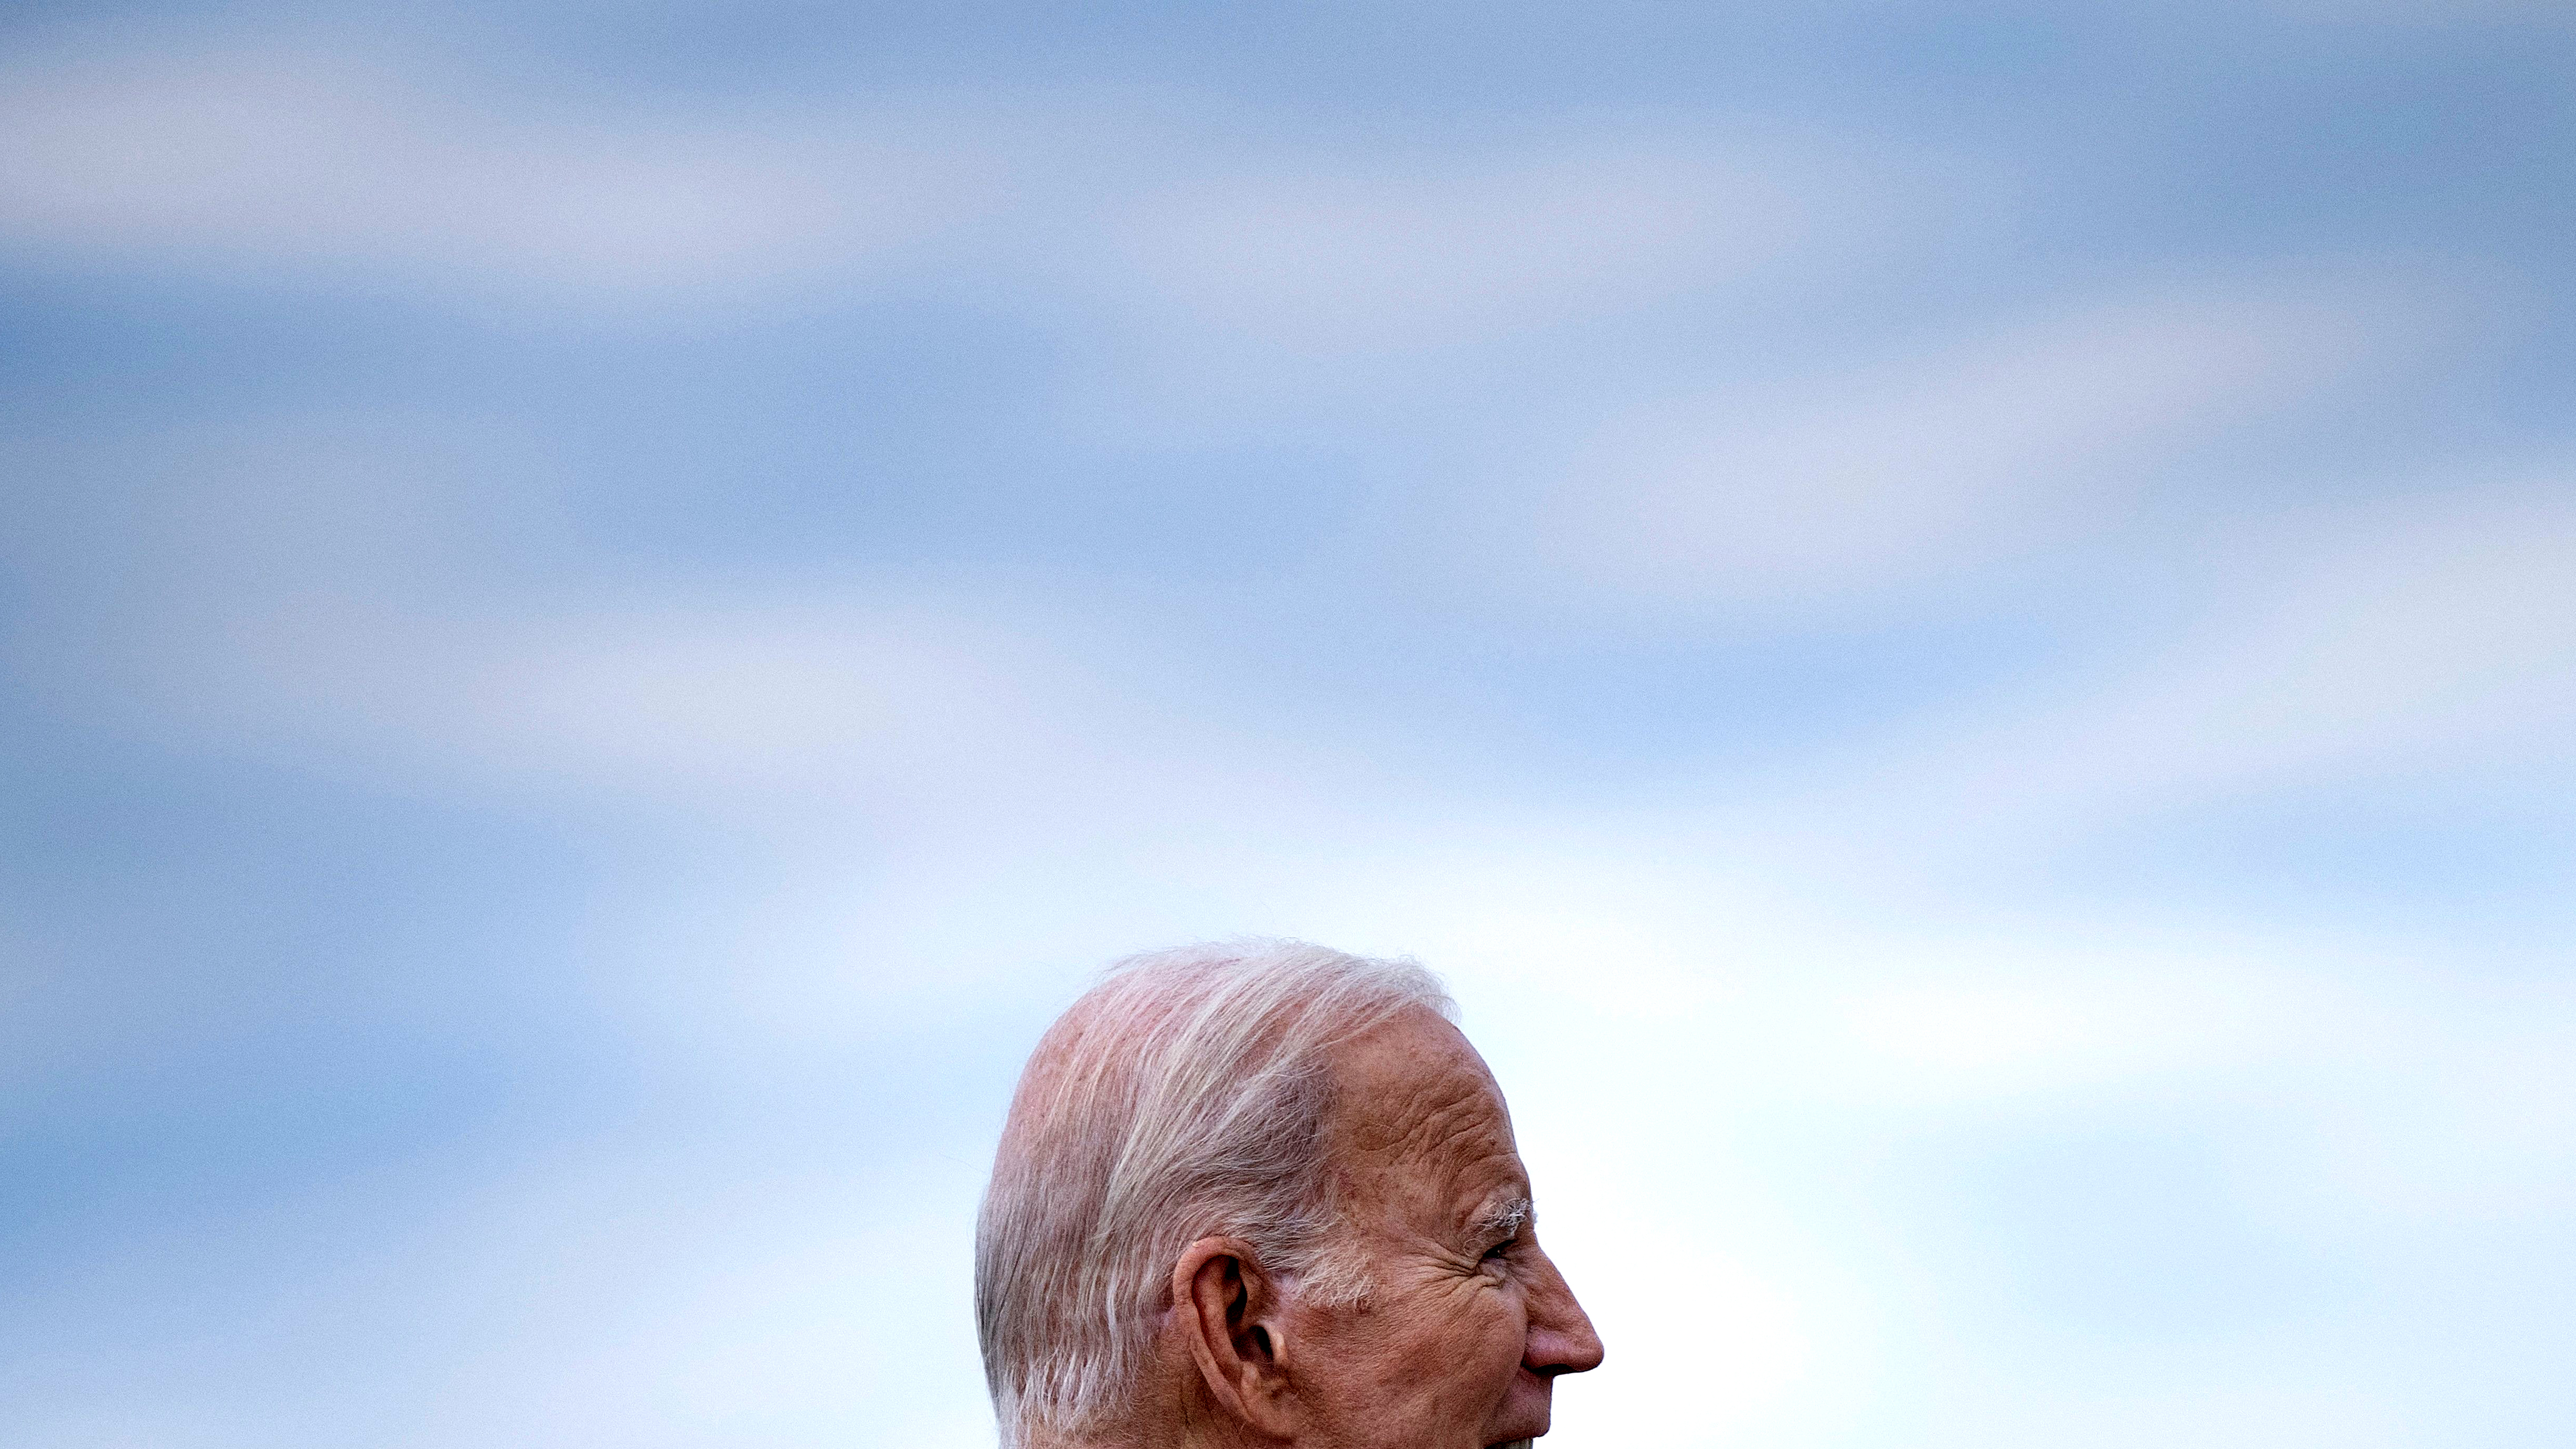 Ein Foto von Joe Bidens Kopf im Profil vor einem dunstigen blauen Himmel